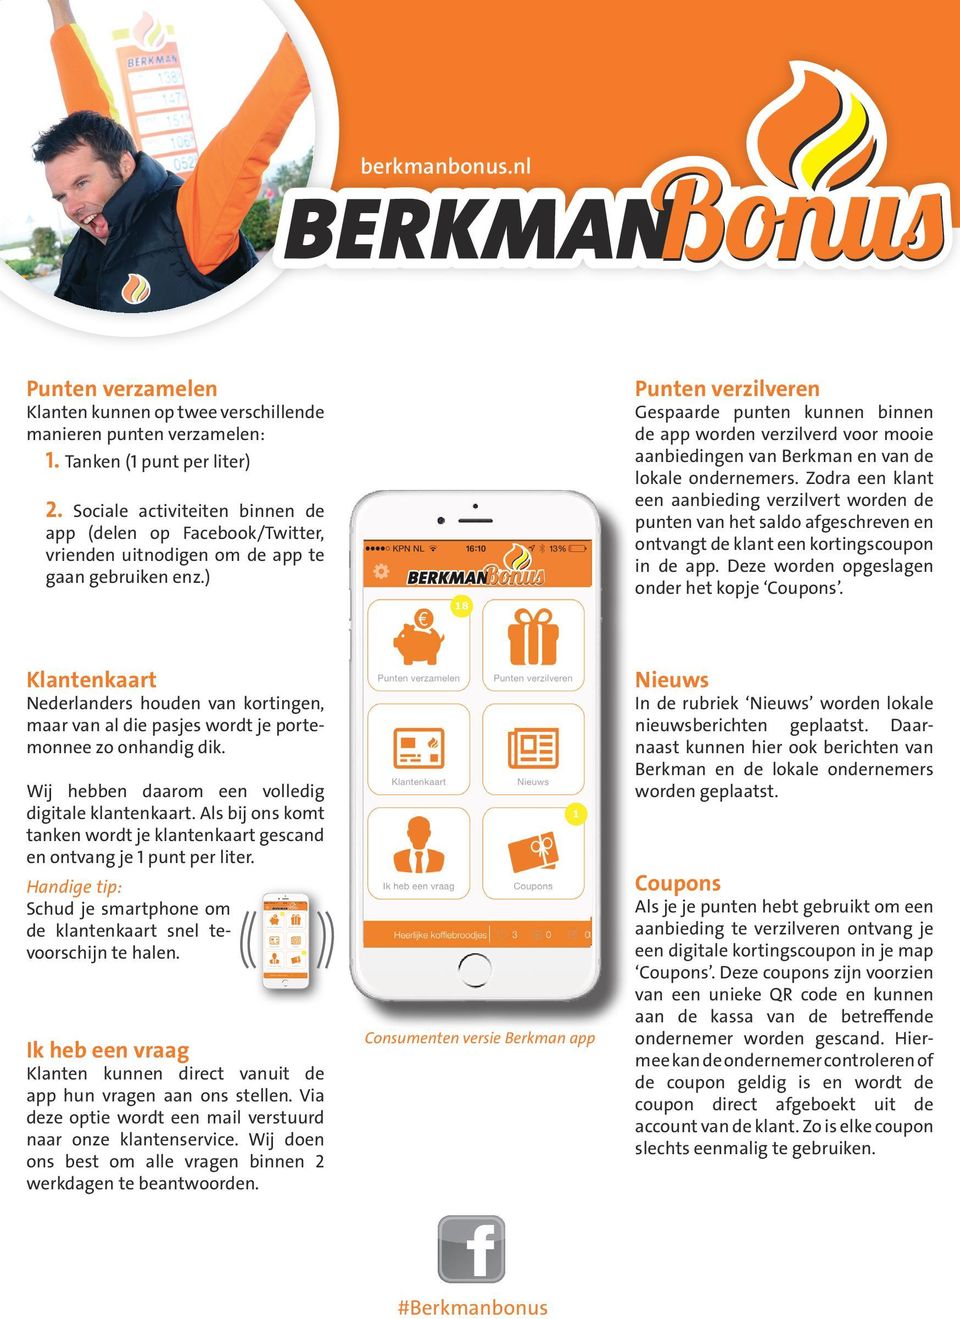 ) Punten verzilveren Gespaarde punten kunnen binnen de app worden verzilverd voor mooie aanbiedingen van Berkman en van de lokale ondernemers.